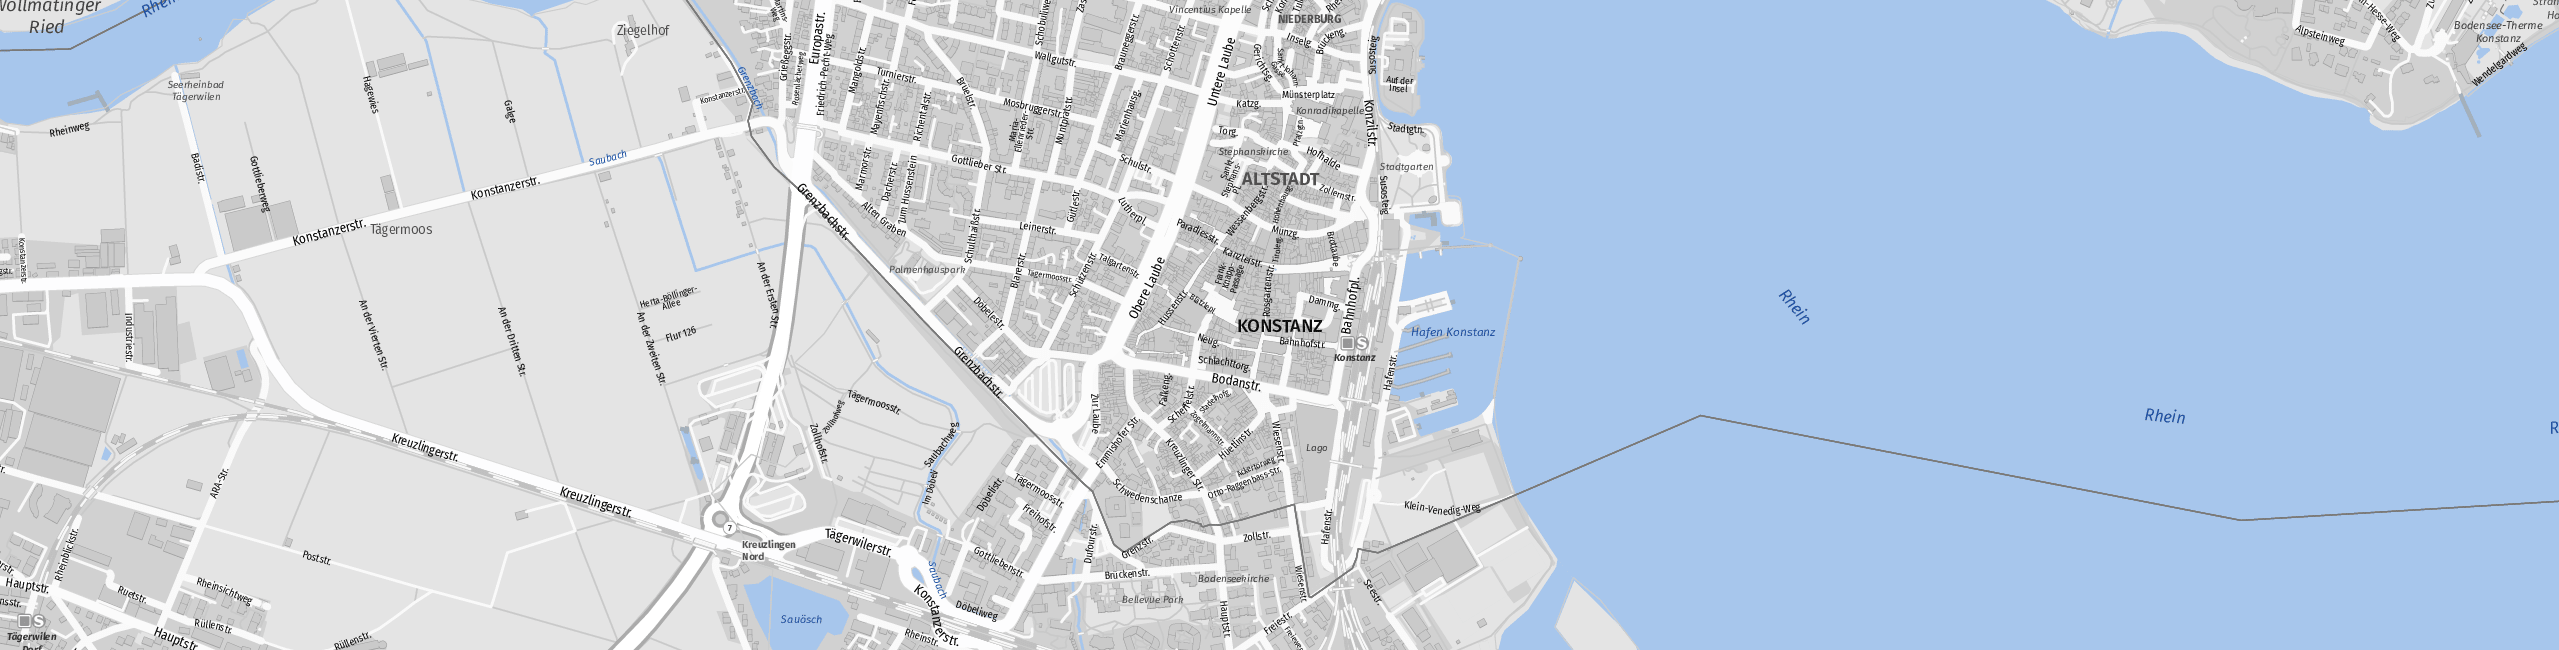 Stadtplan Constance zum Downloaden.